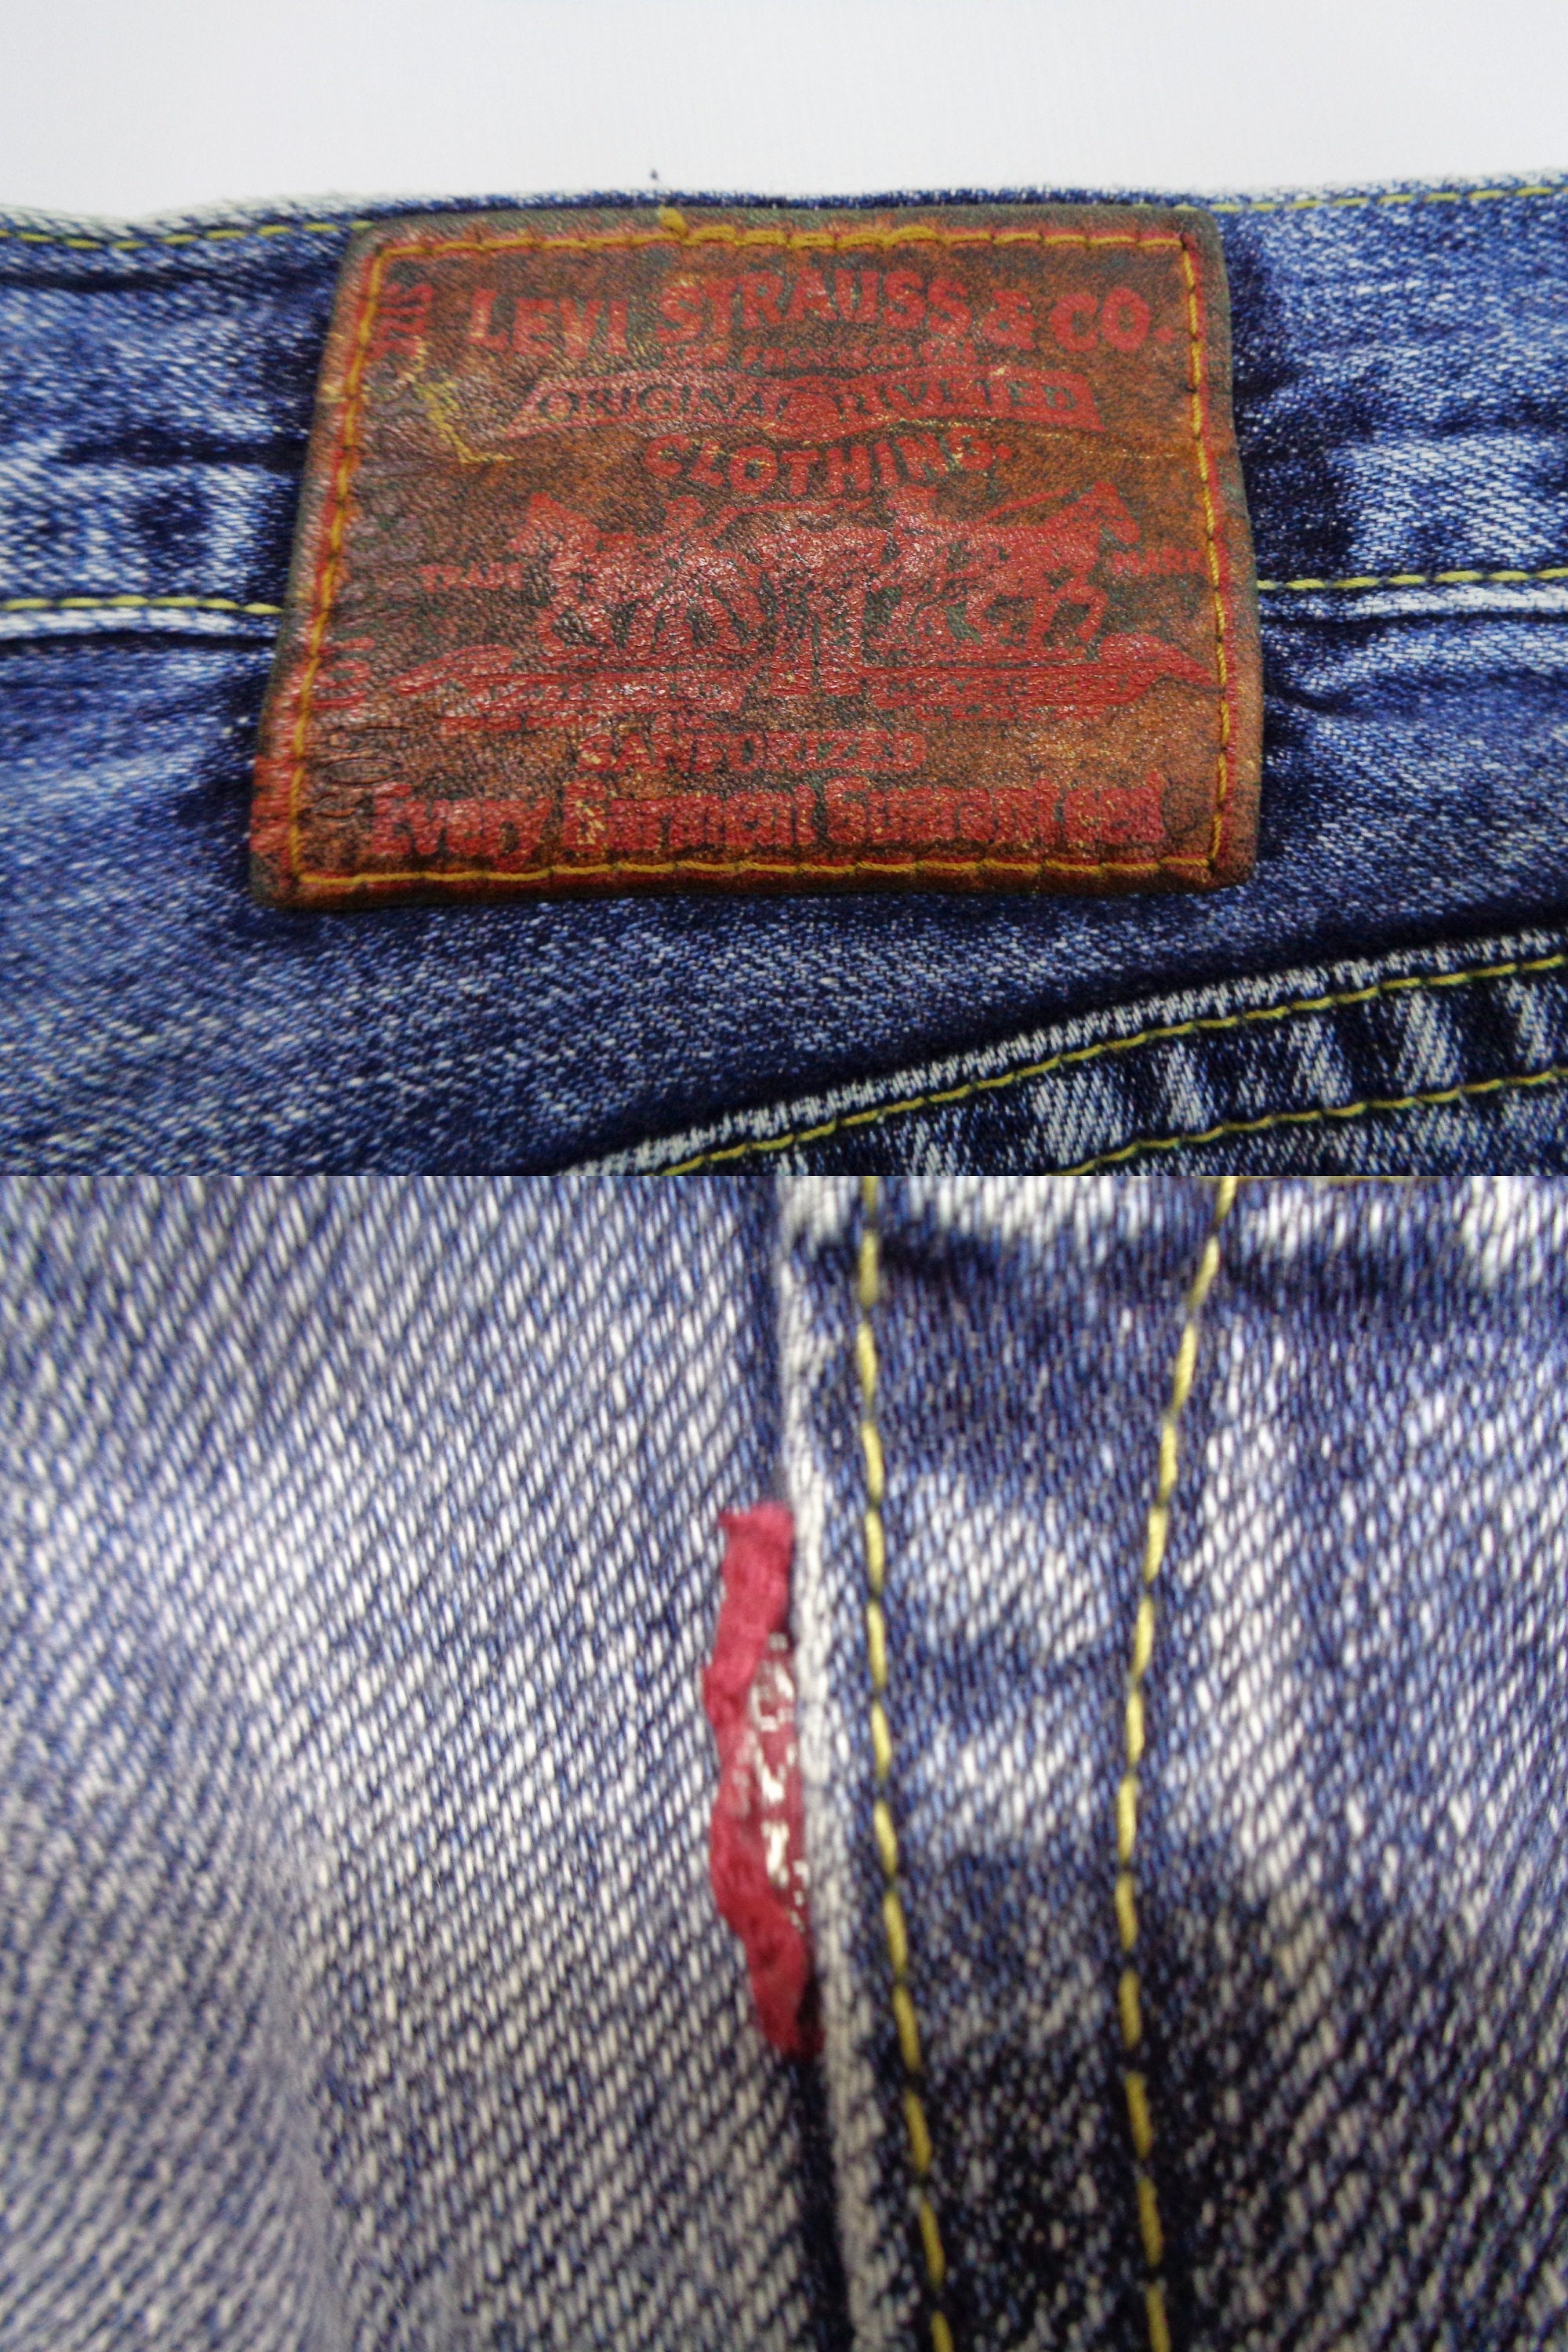 Levis Jeans Distressed Vintage Size 34 Levis Denim Pants | Etsy